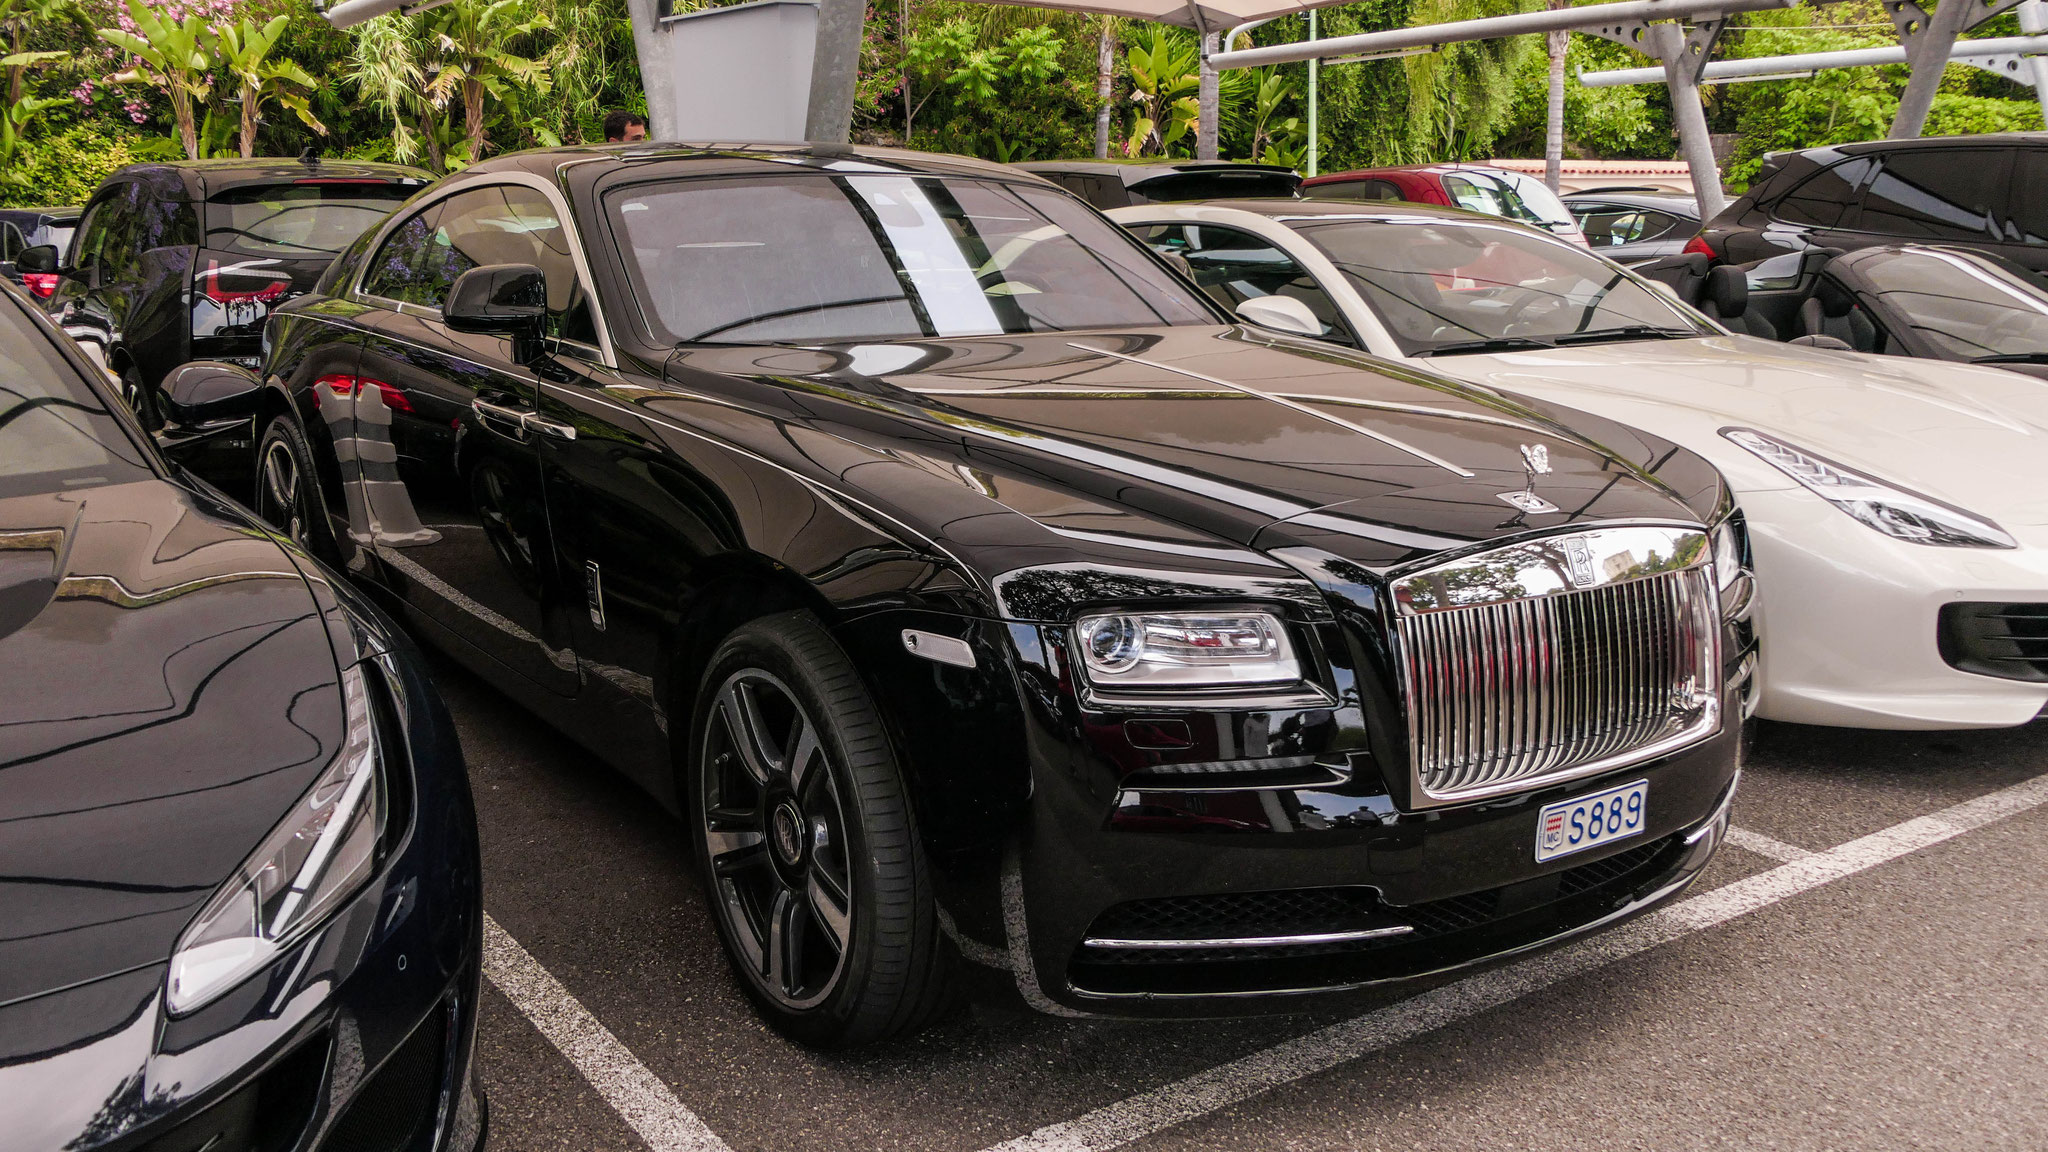 Rolls Royce Wraith - S889 (MC)